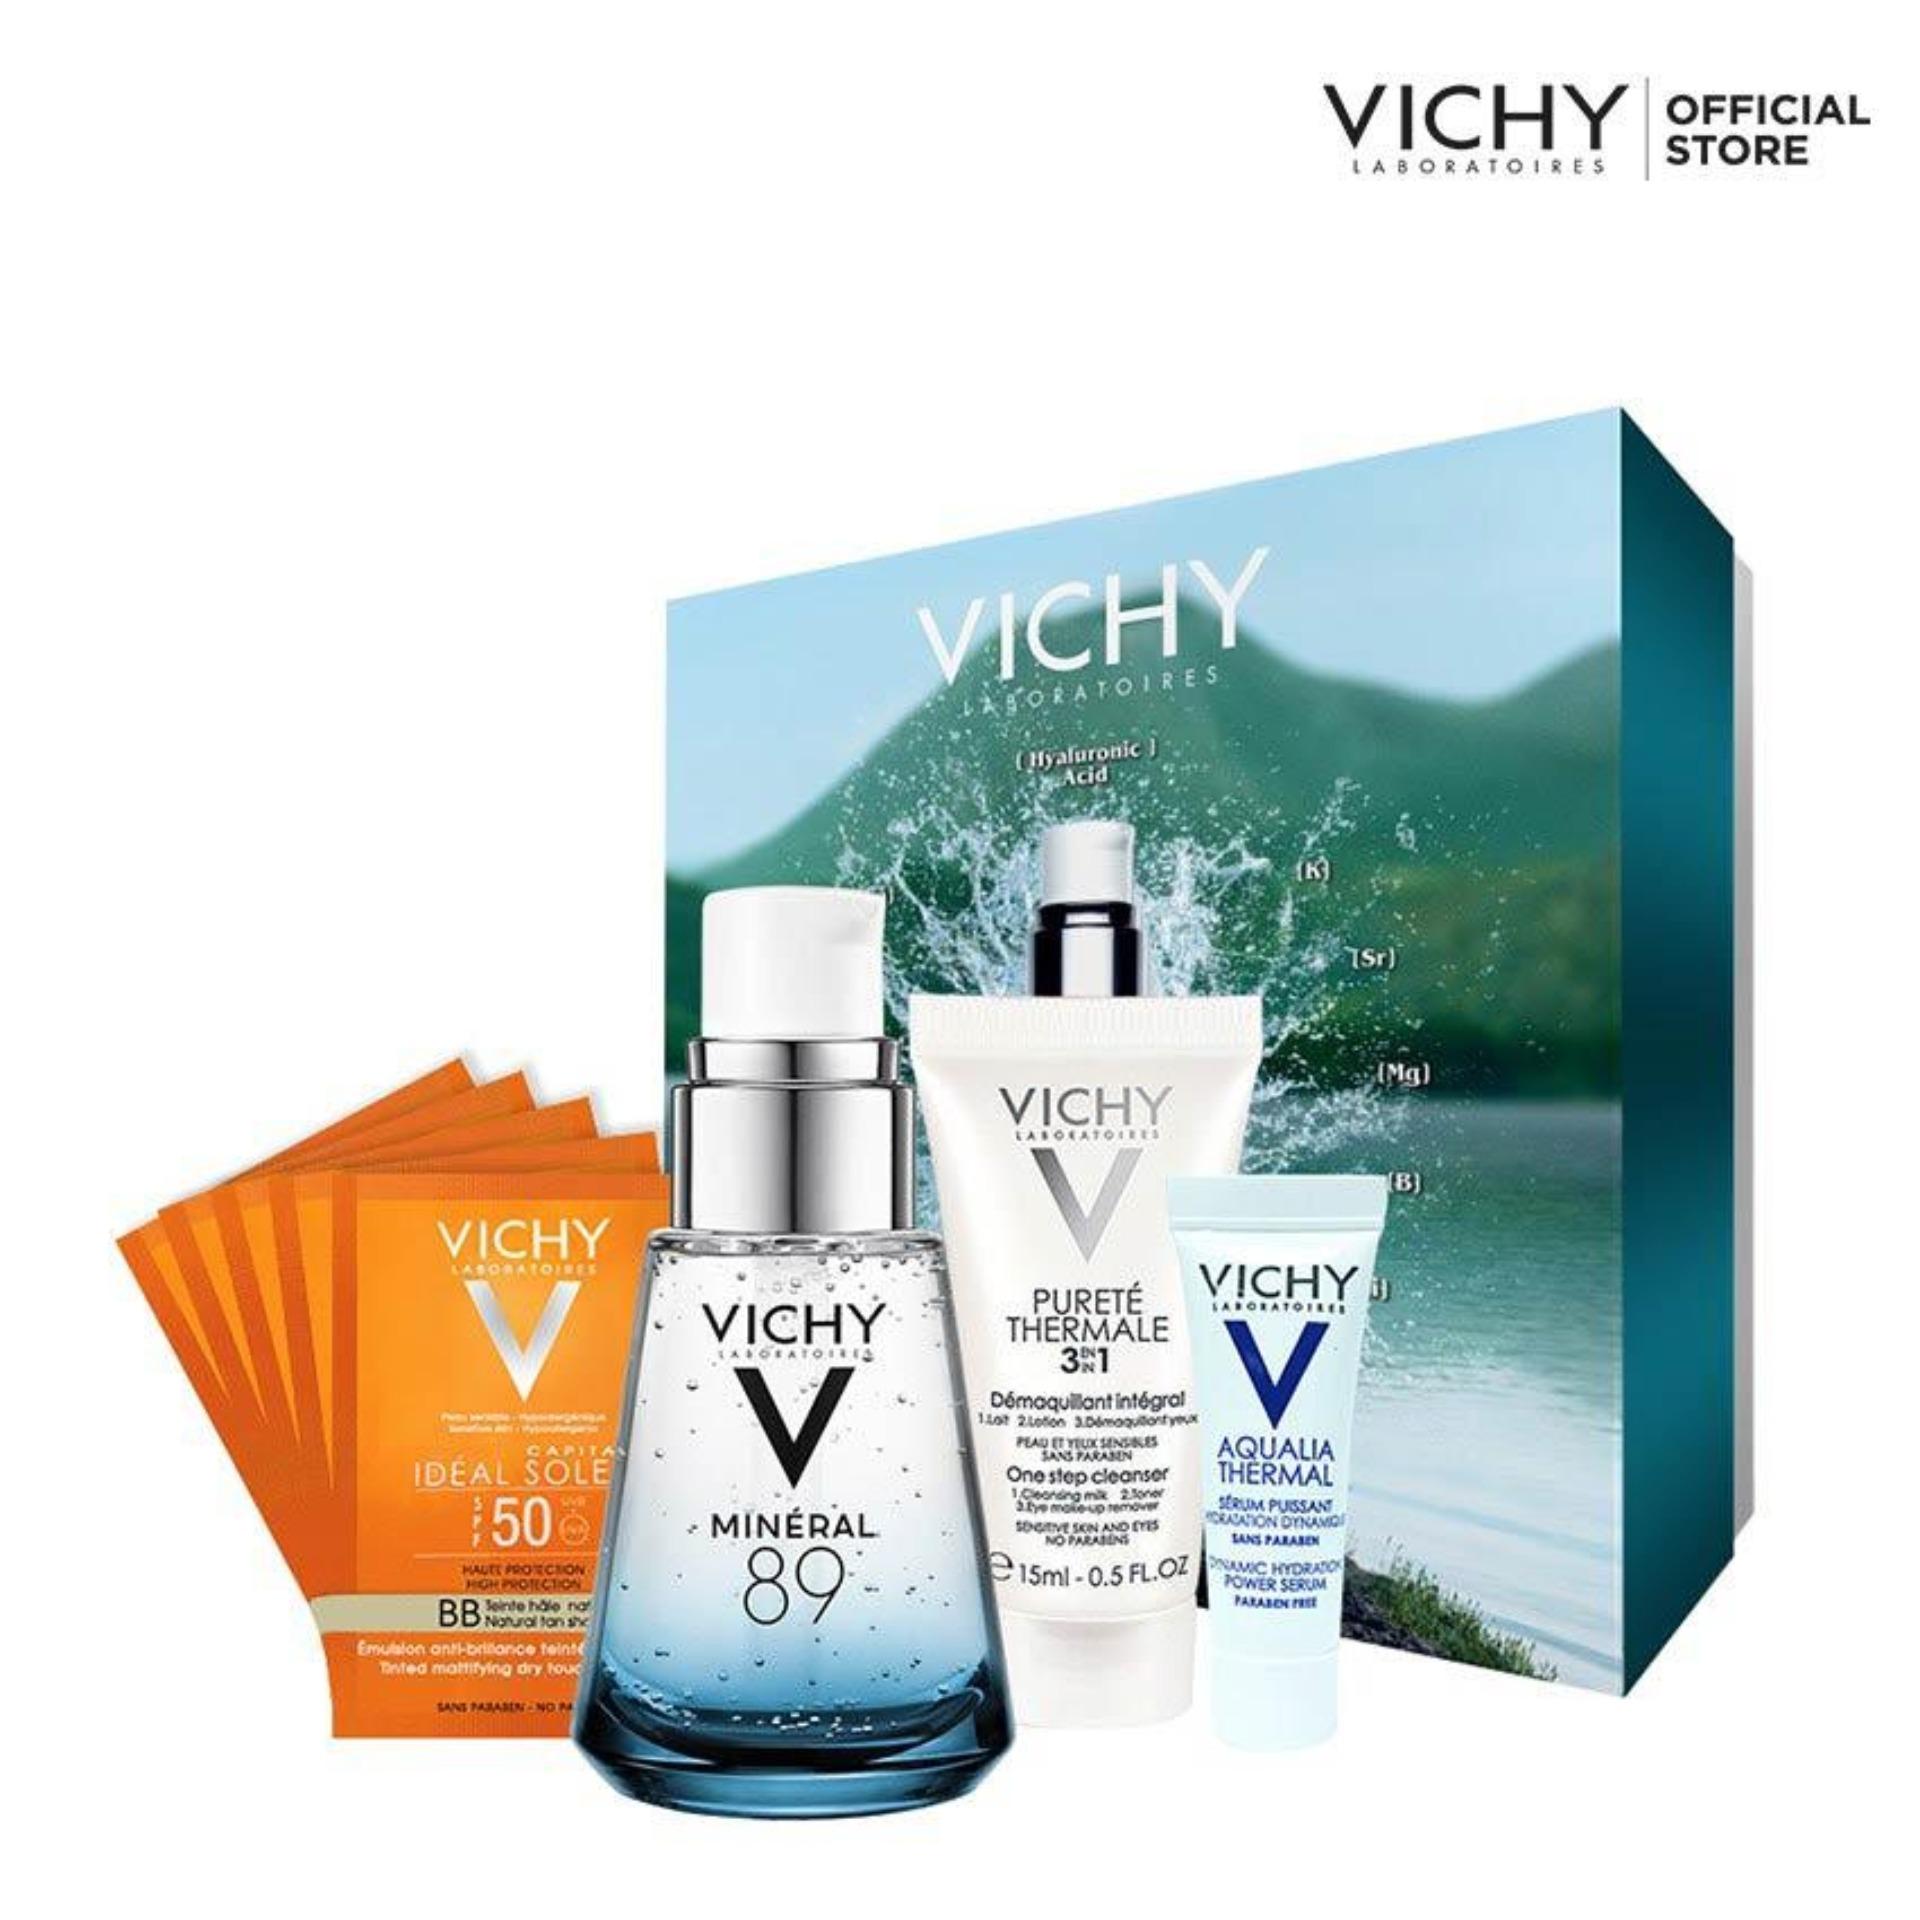 Bộ dưỡng chất khoáng cô đặc Vichy Mineral 89 30ML giúp phục hồi và nuôi dưỡng cho làn da căng...